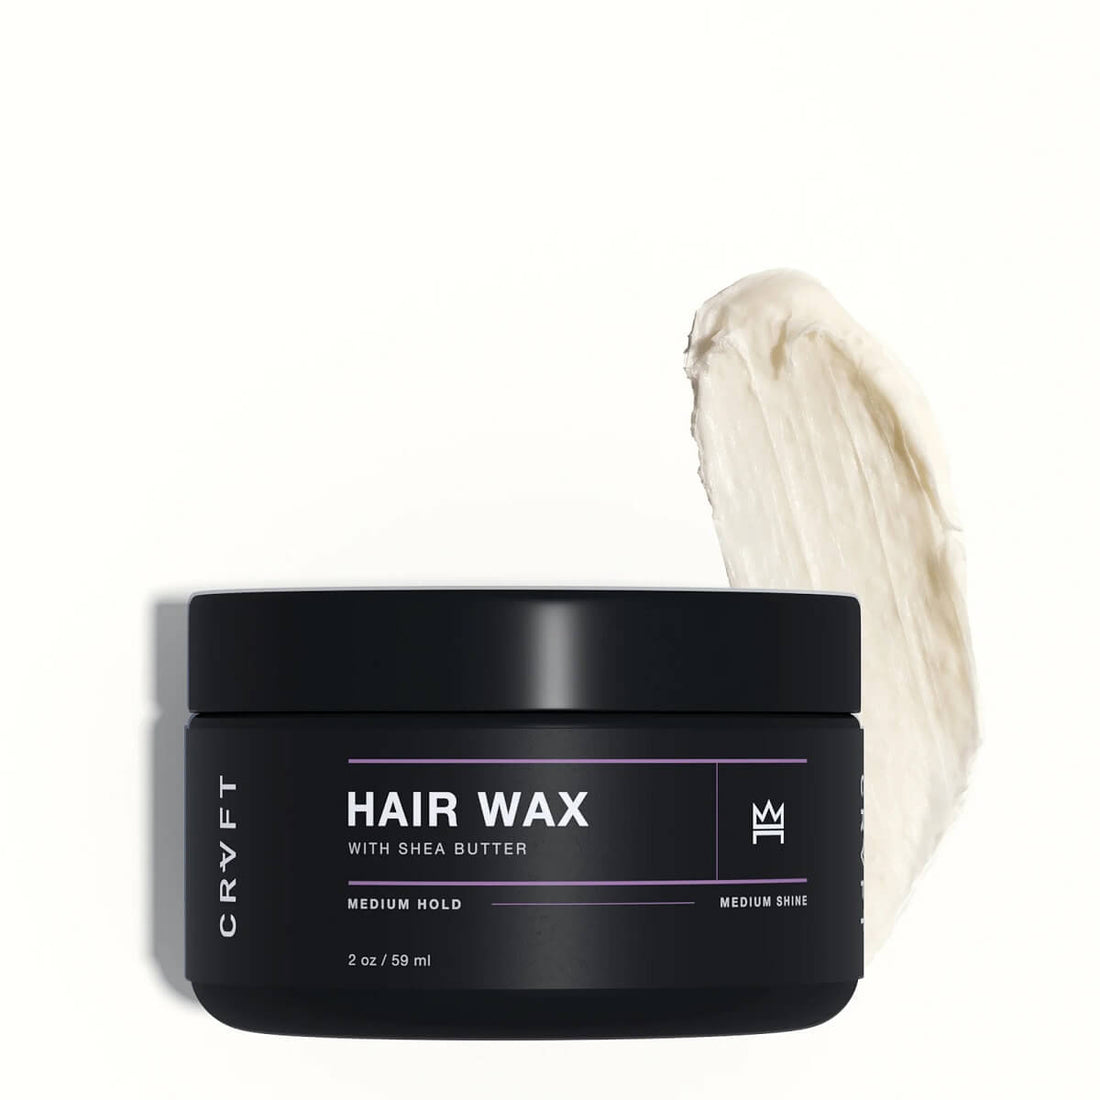 Men's hair wax